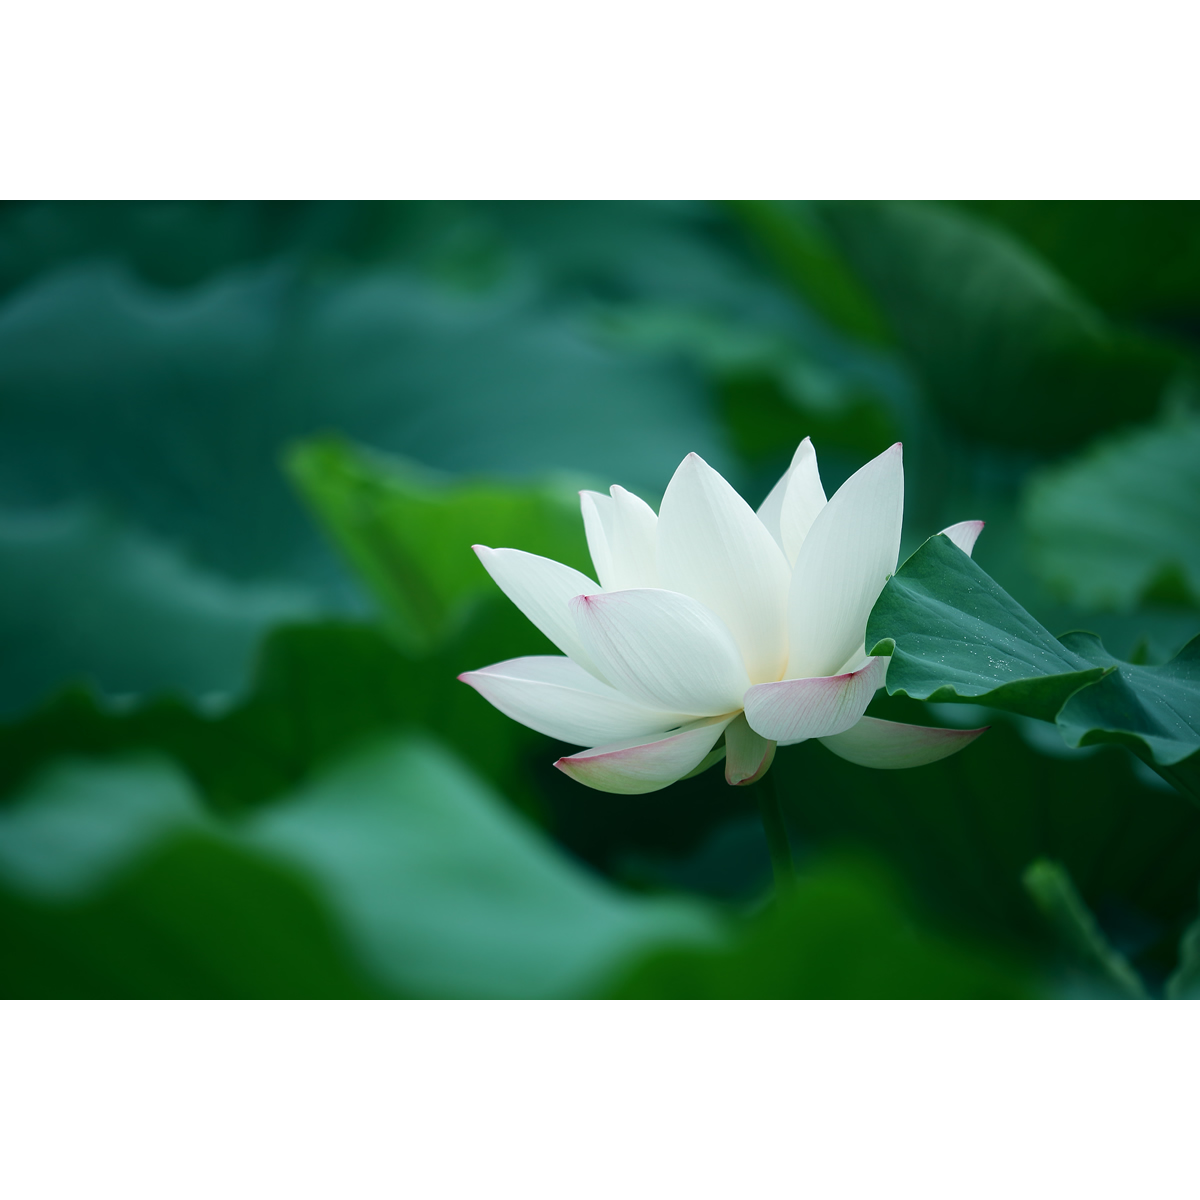 原创花卉摄影作品-白色荷花/白莲花(1张) 高分辨率原图片